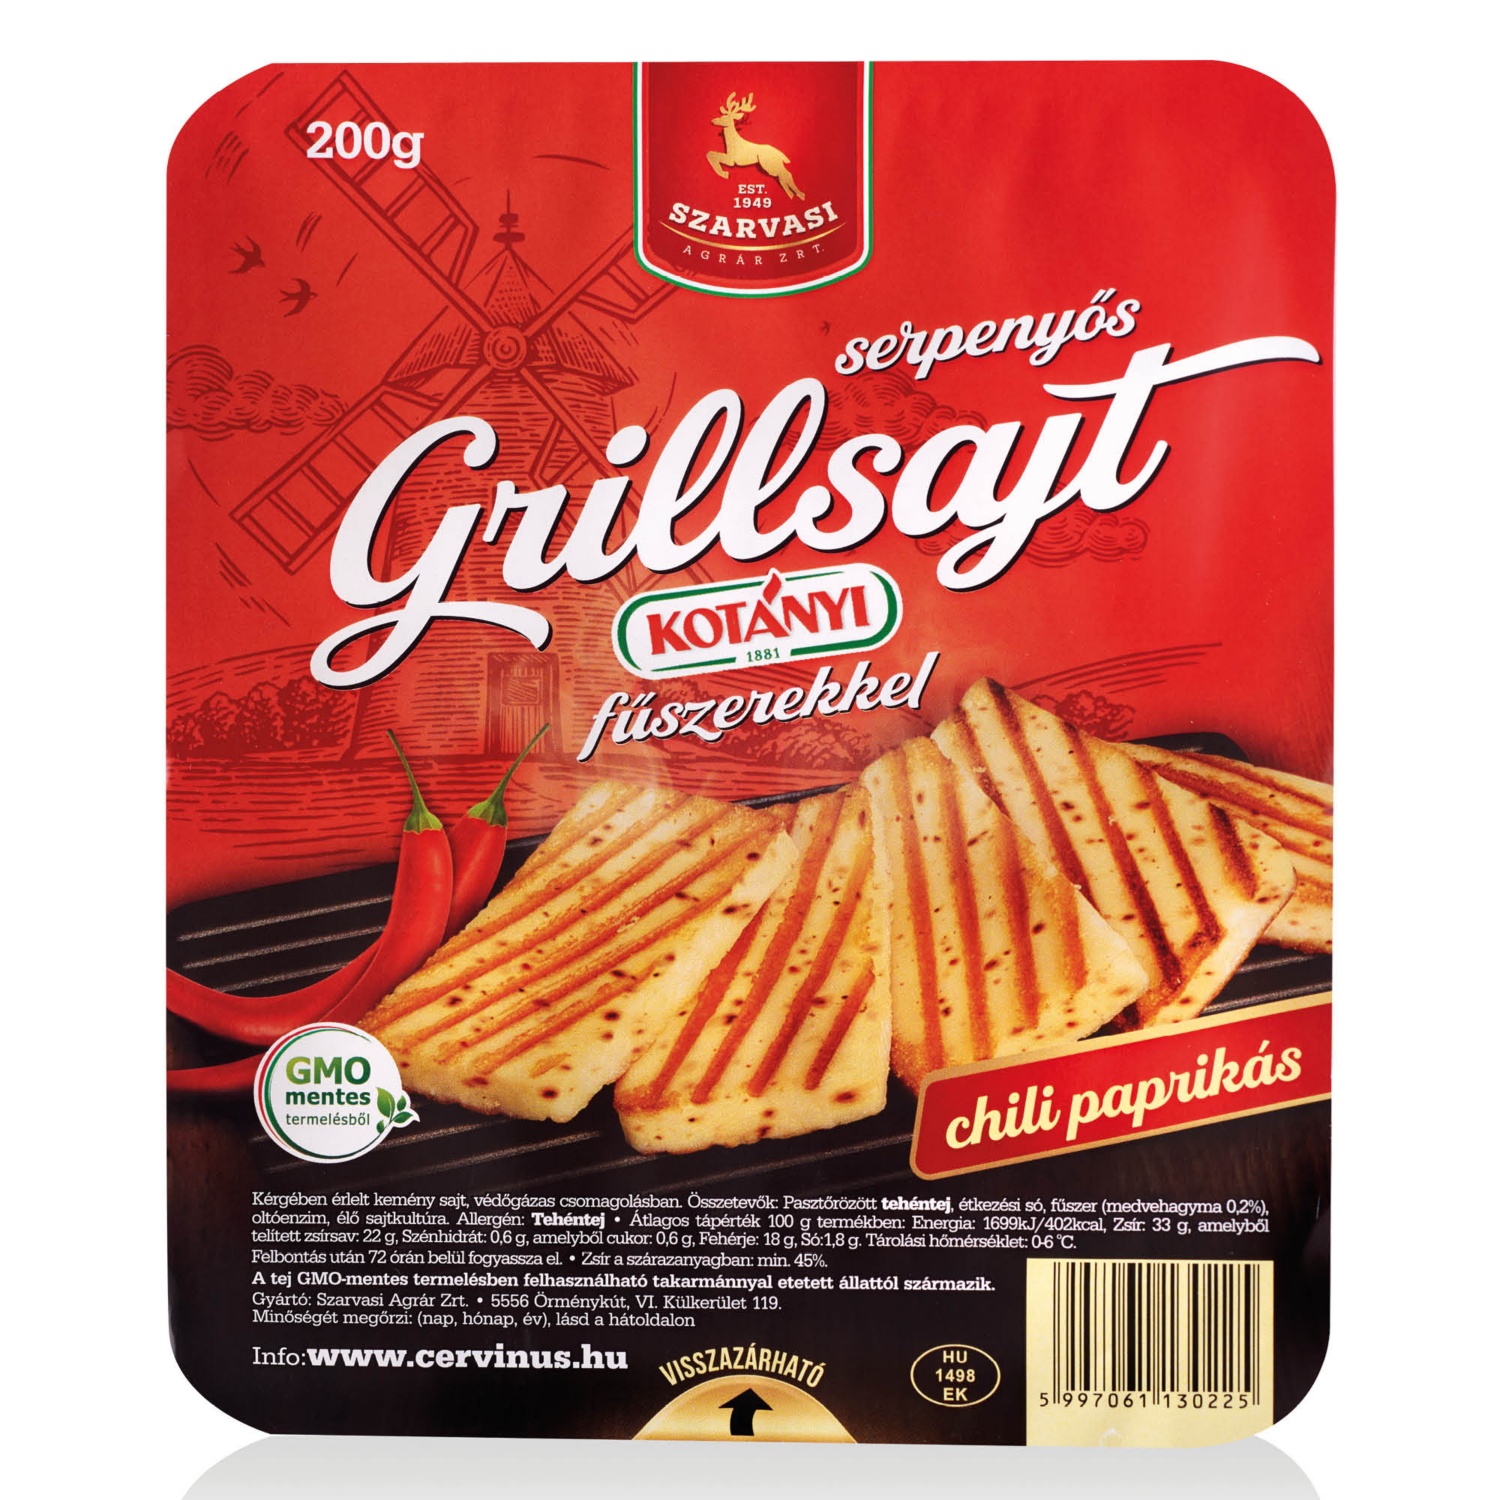 SZARVASI Serpenyős grillsajt, 200 g, chili paprikás